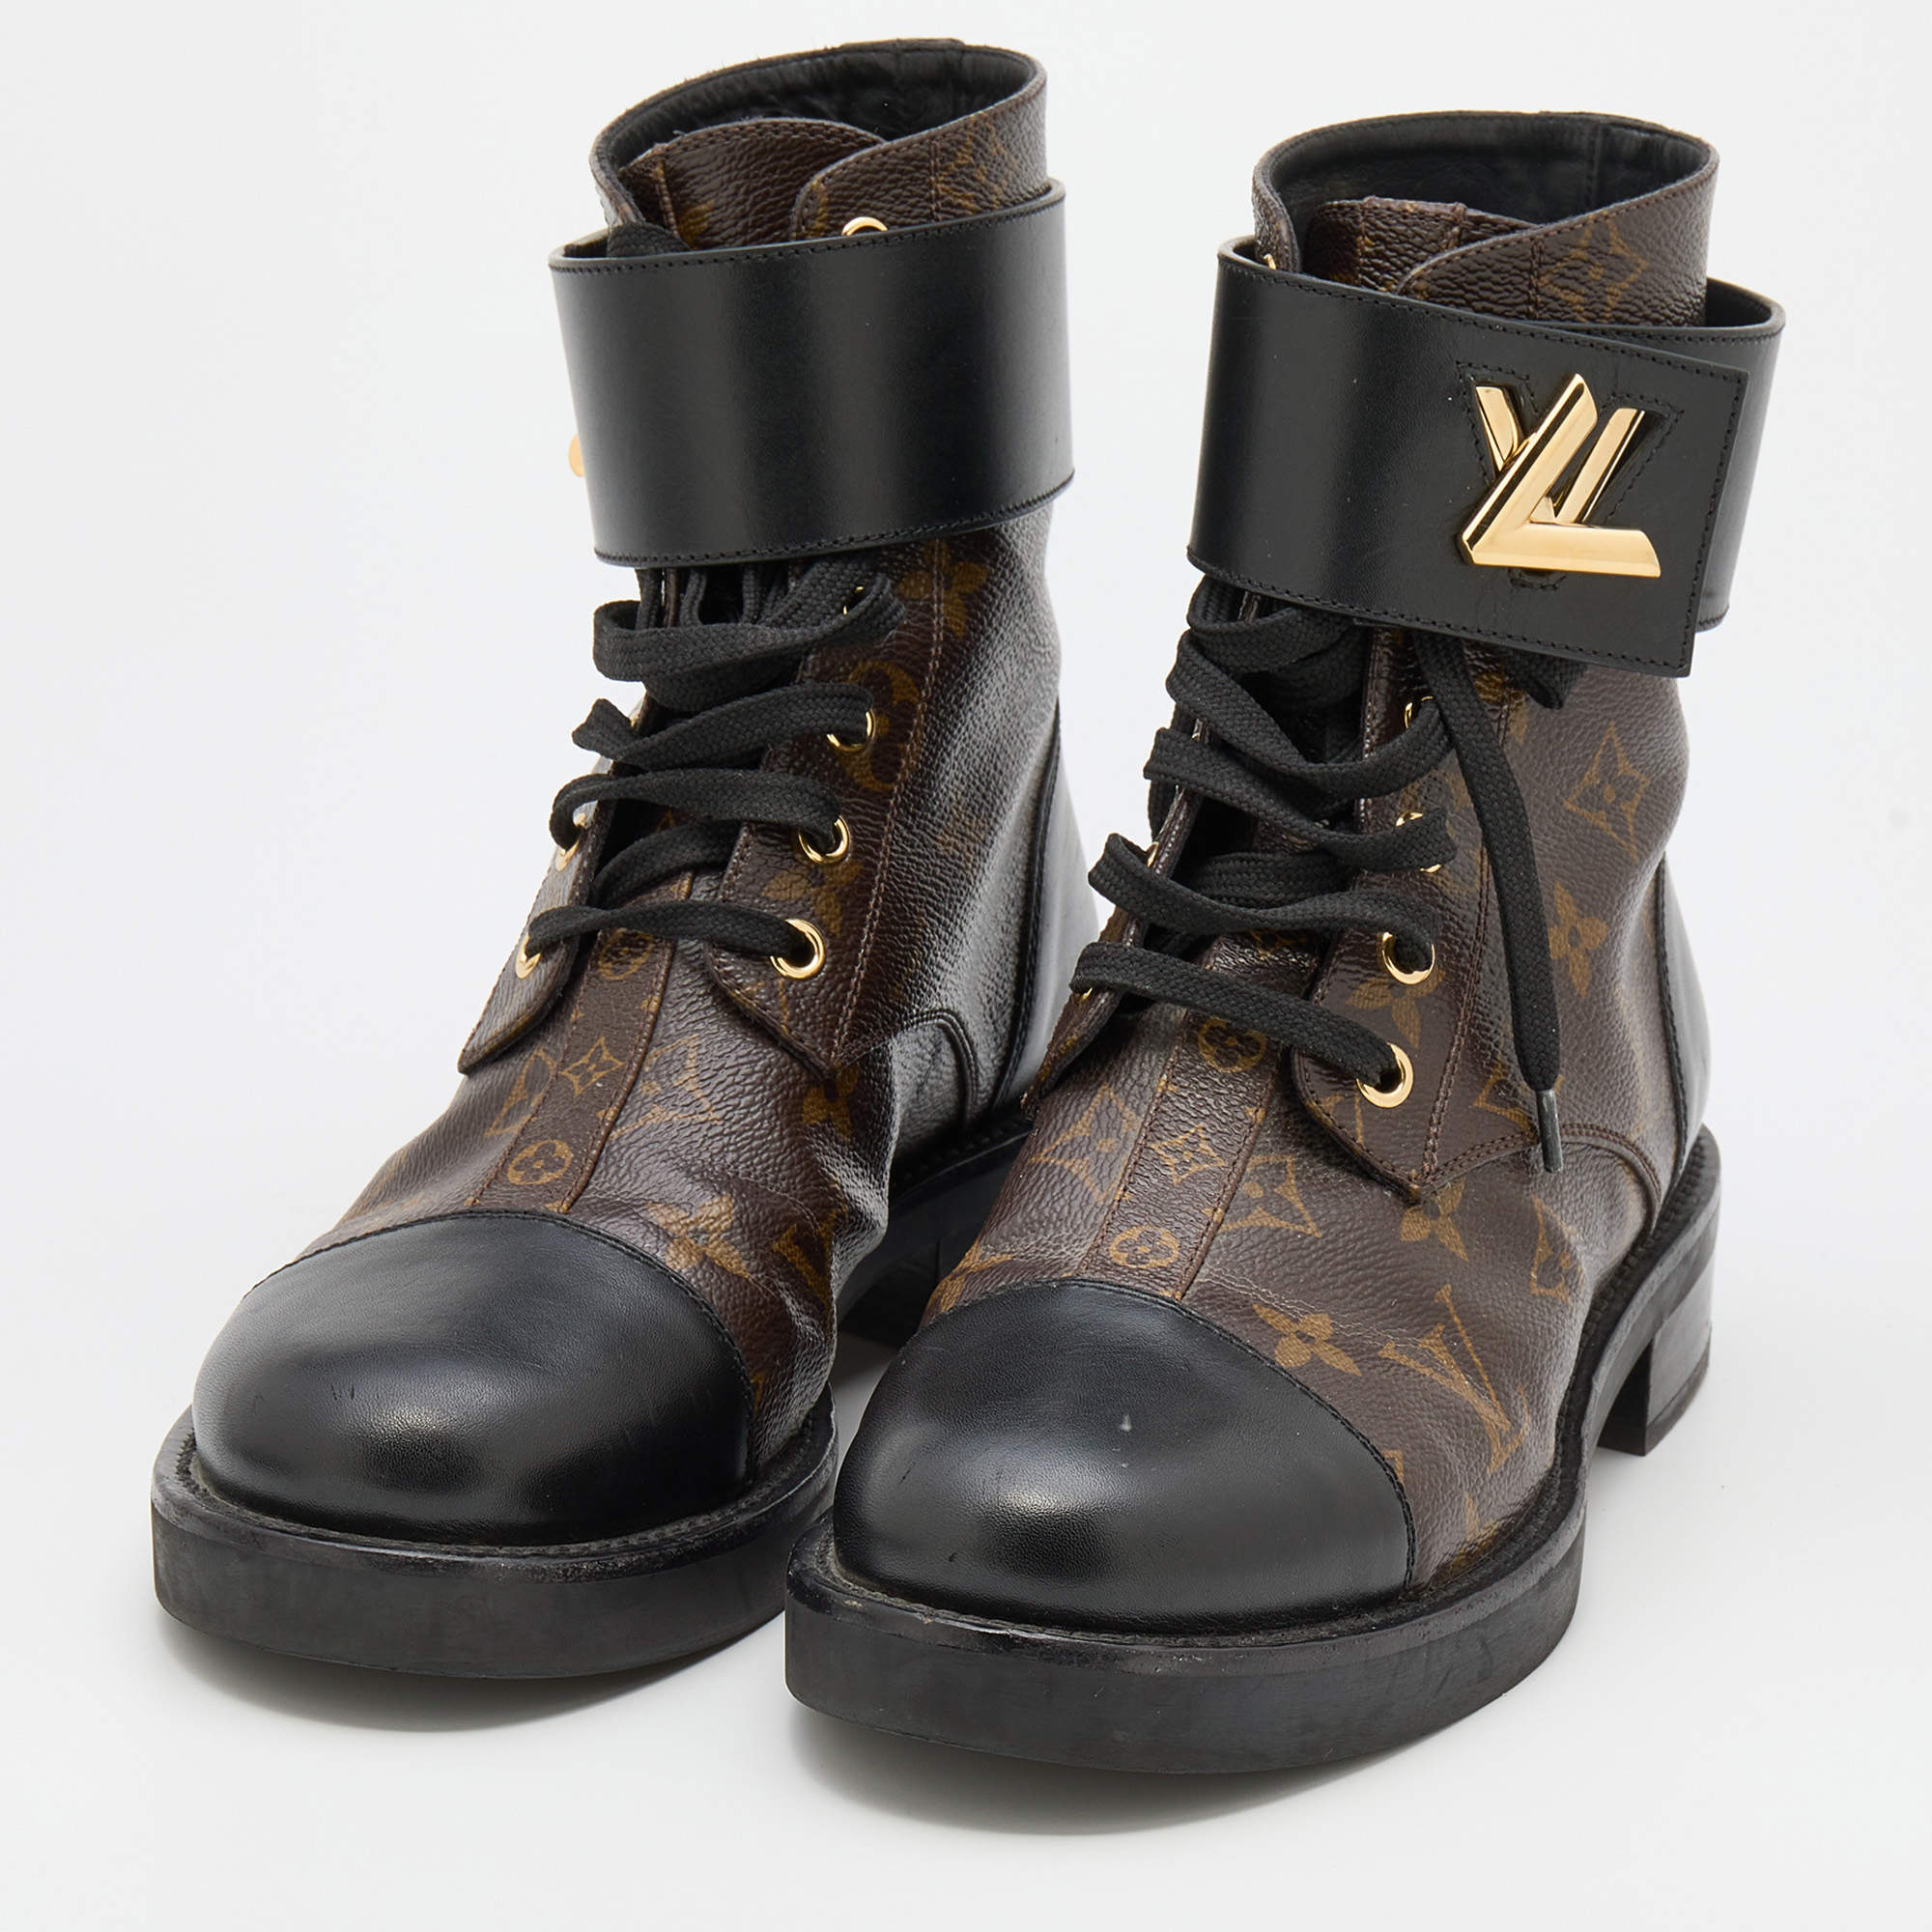 Louis Vuitton Canvas Printed Combat Boots - ShopStyle